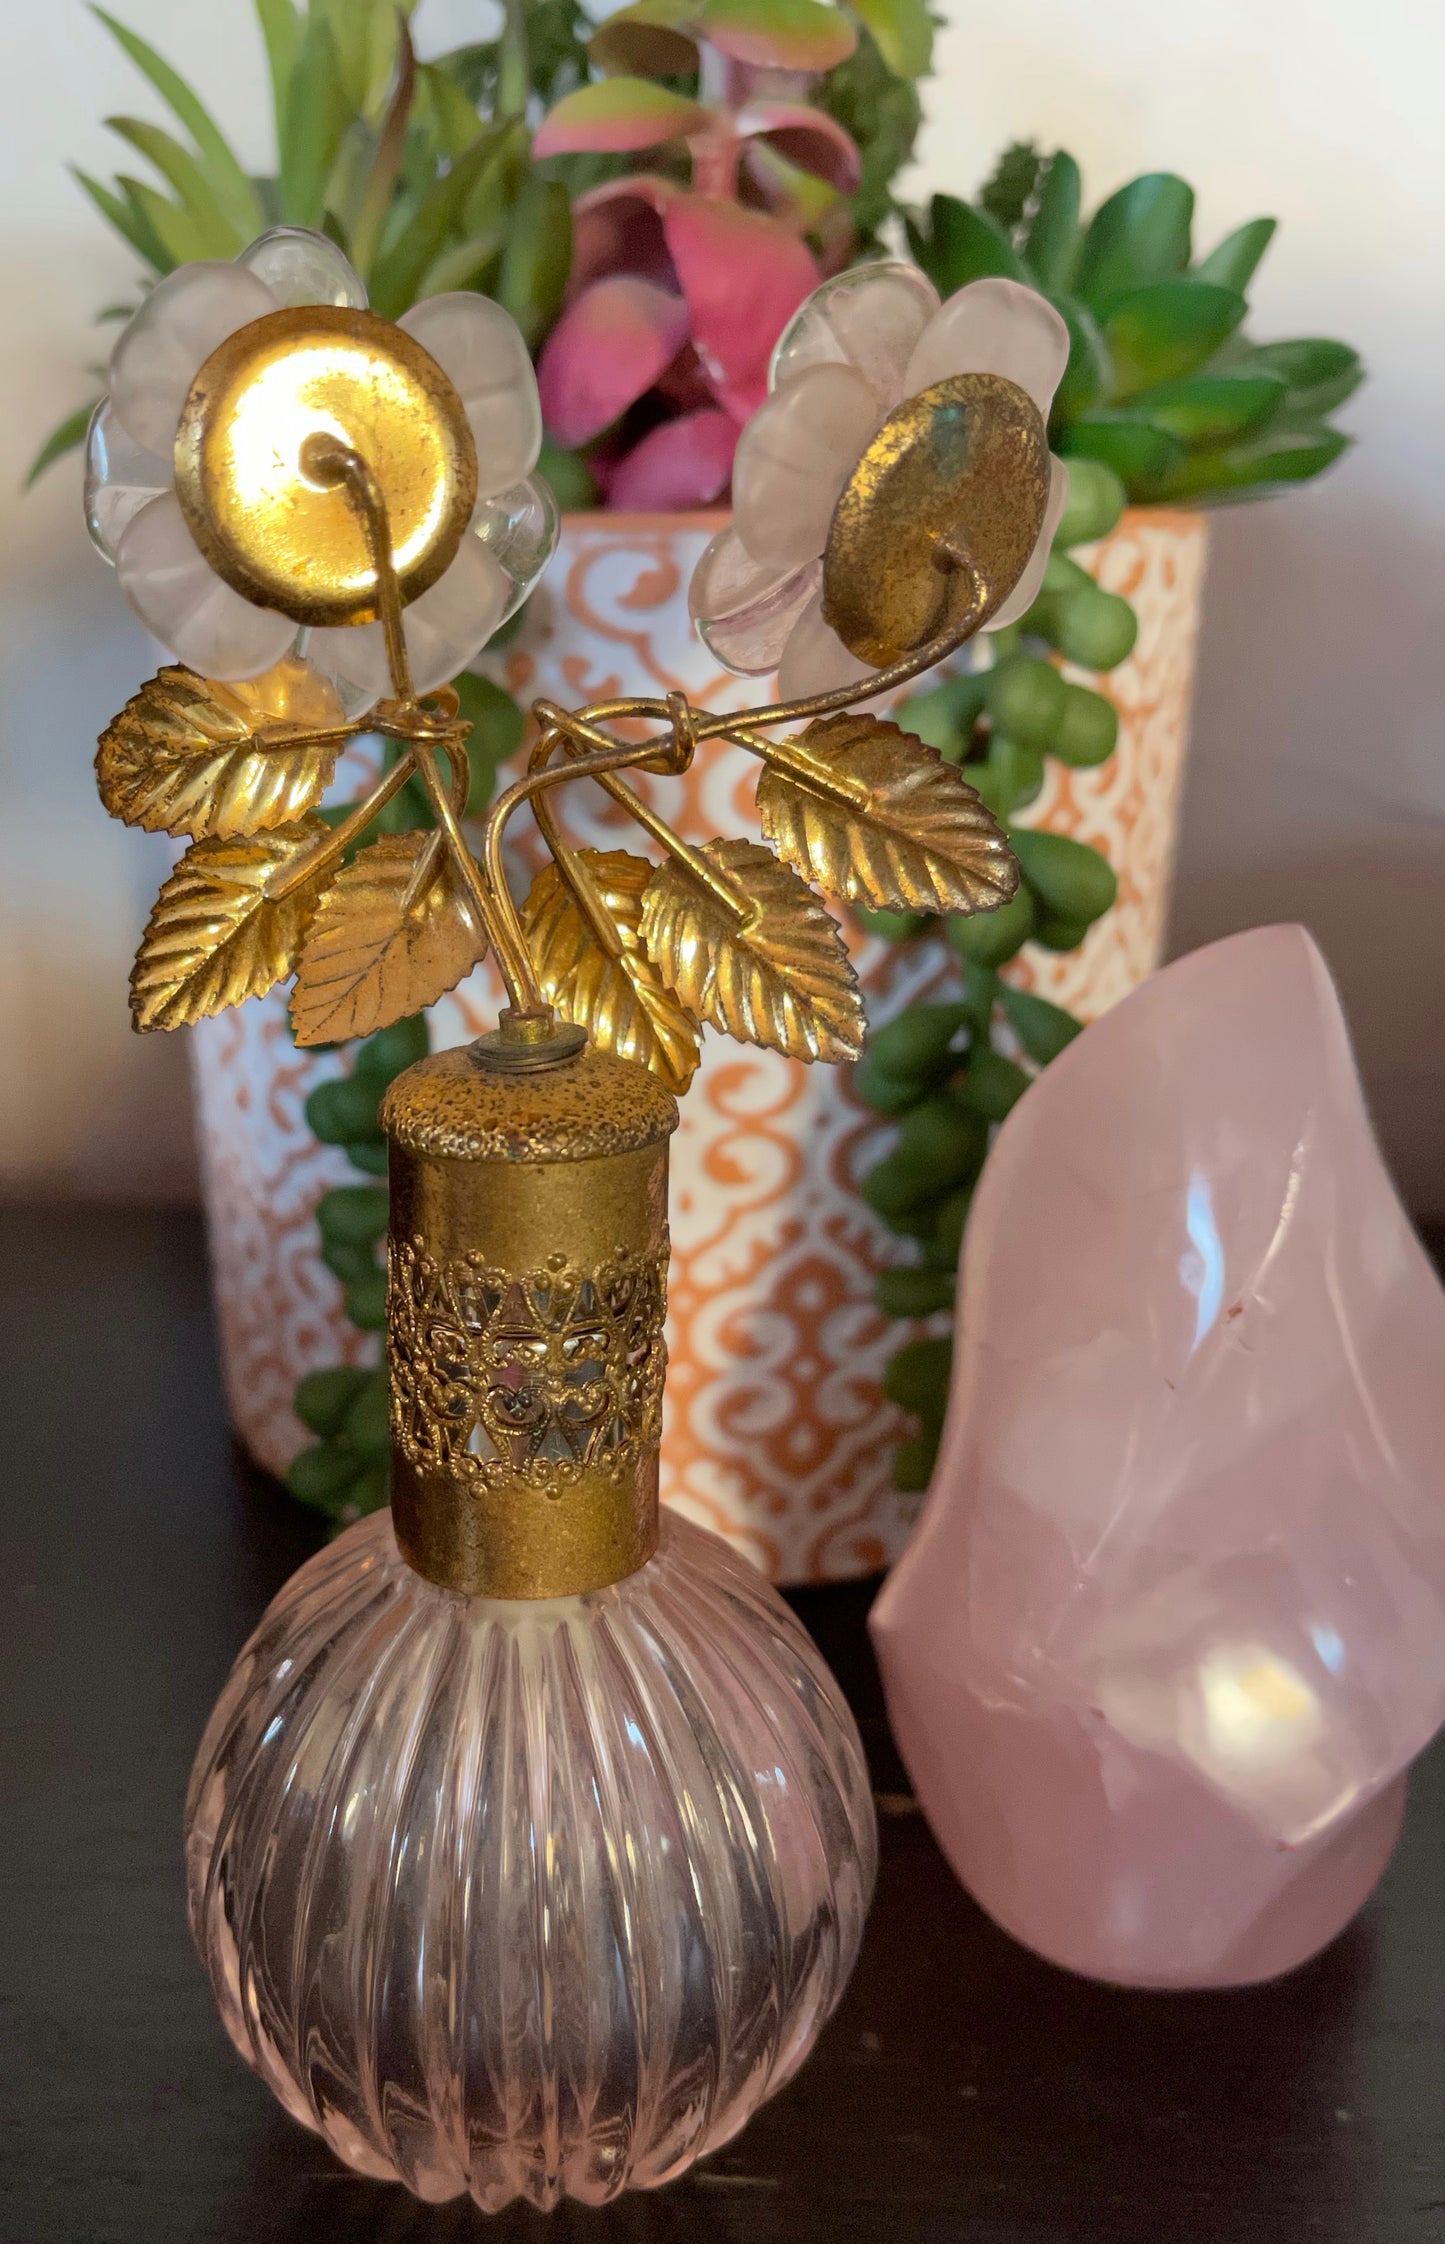 Gift Set, Vintage Floral Perfume Bottle, Old World Vintage, Crystal Magic